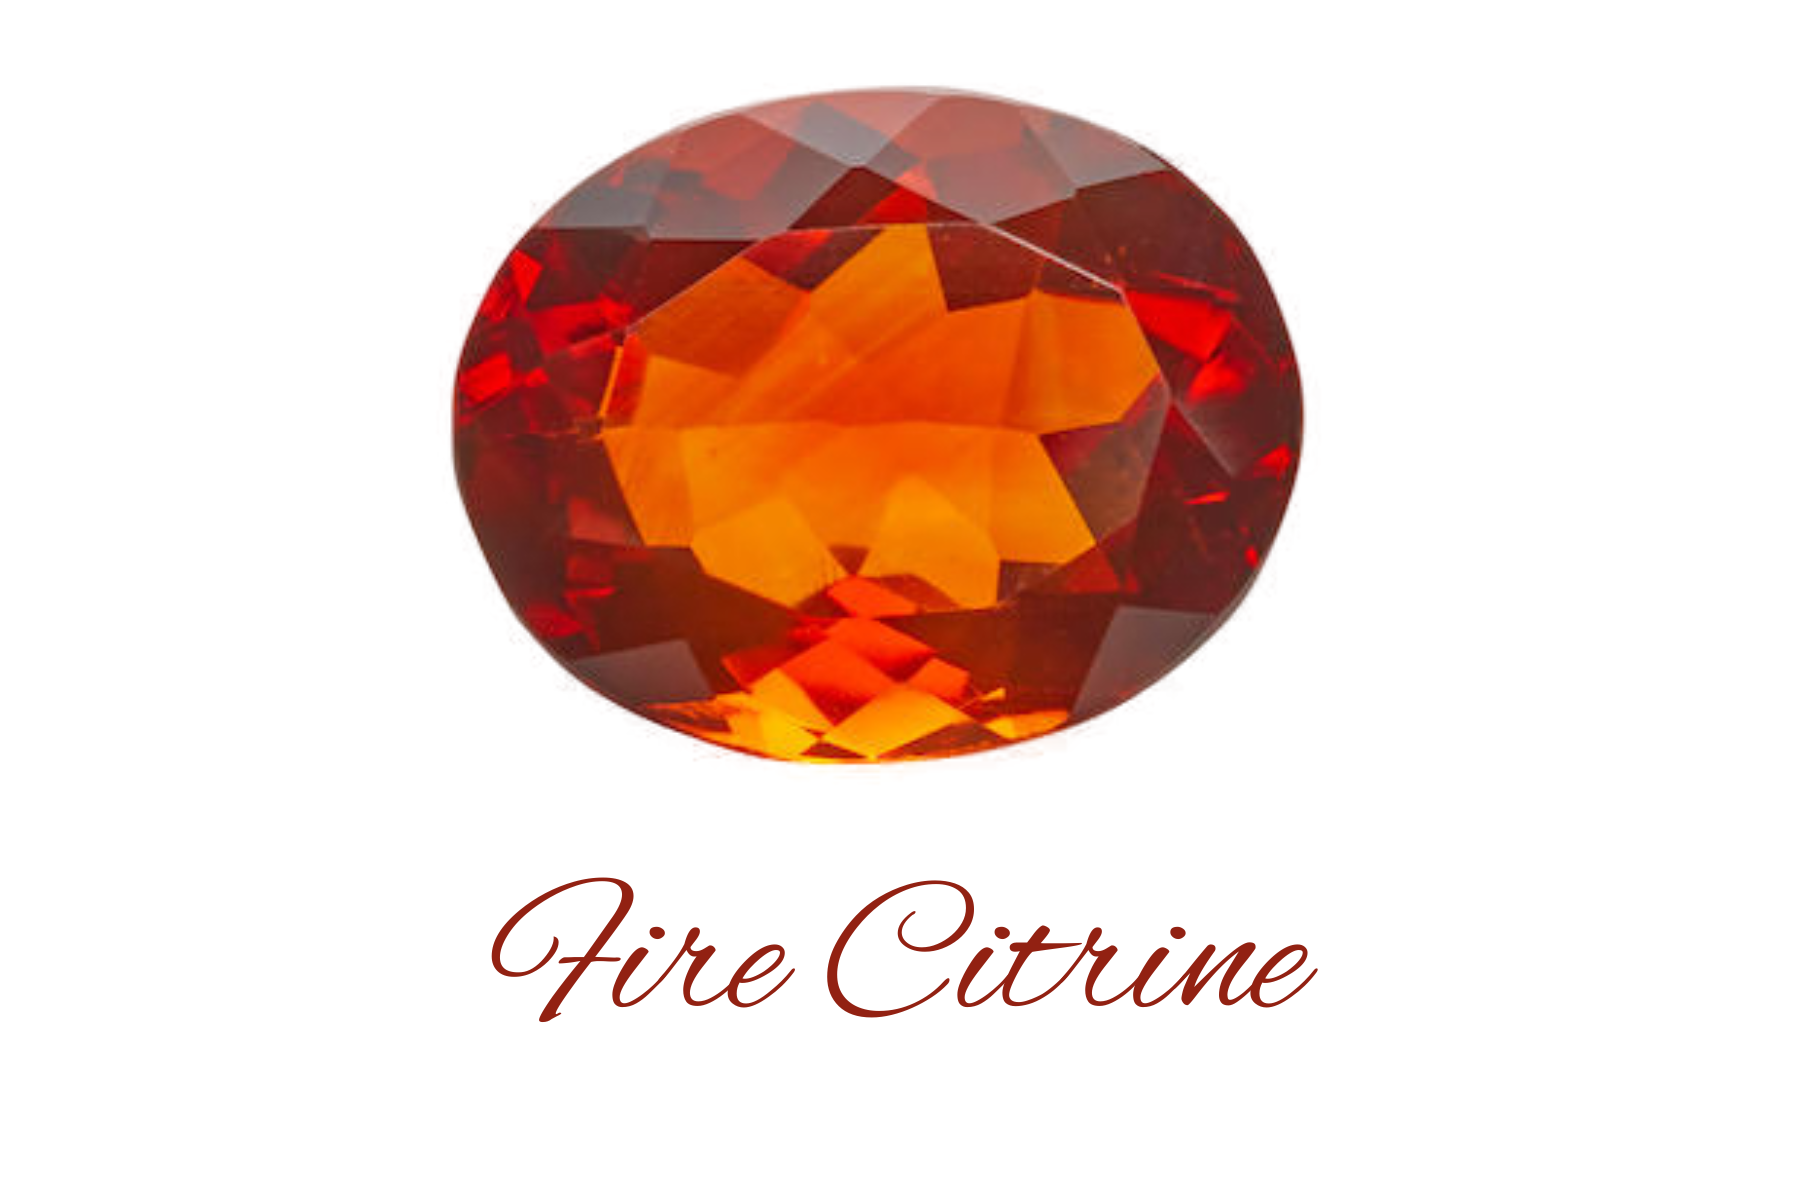 Orange-red Fire citrine